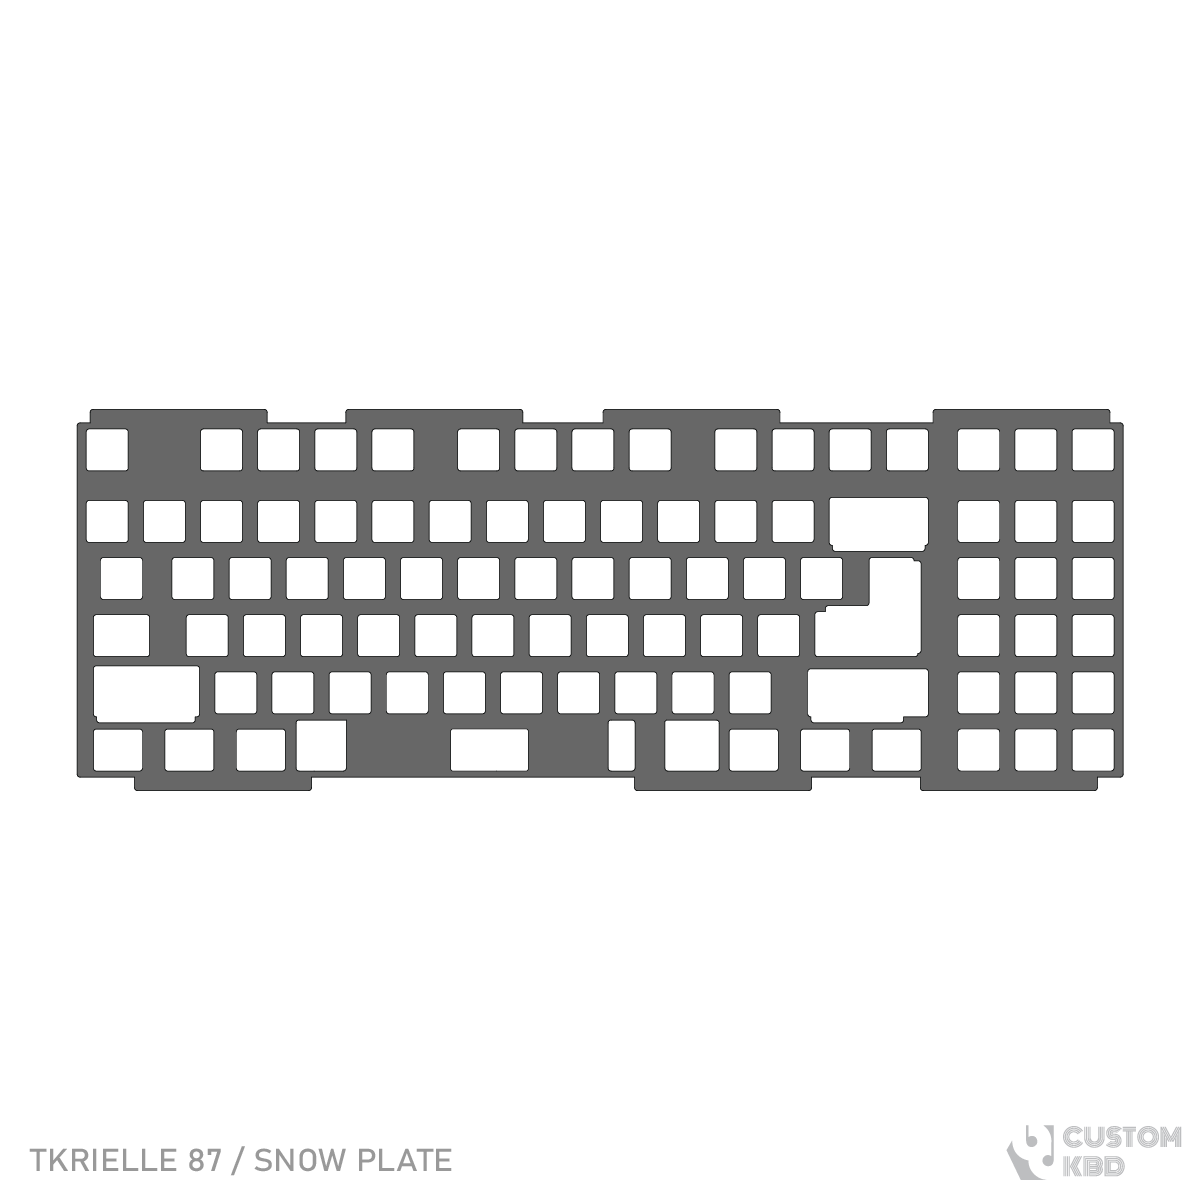 TKRielle TKL Keyboard